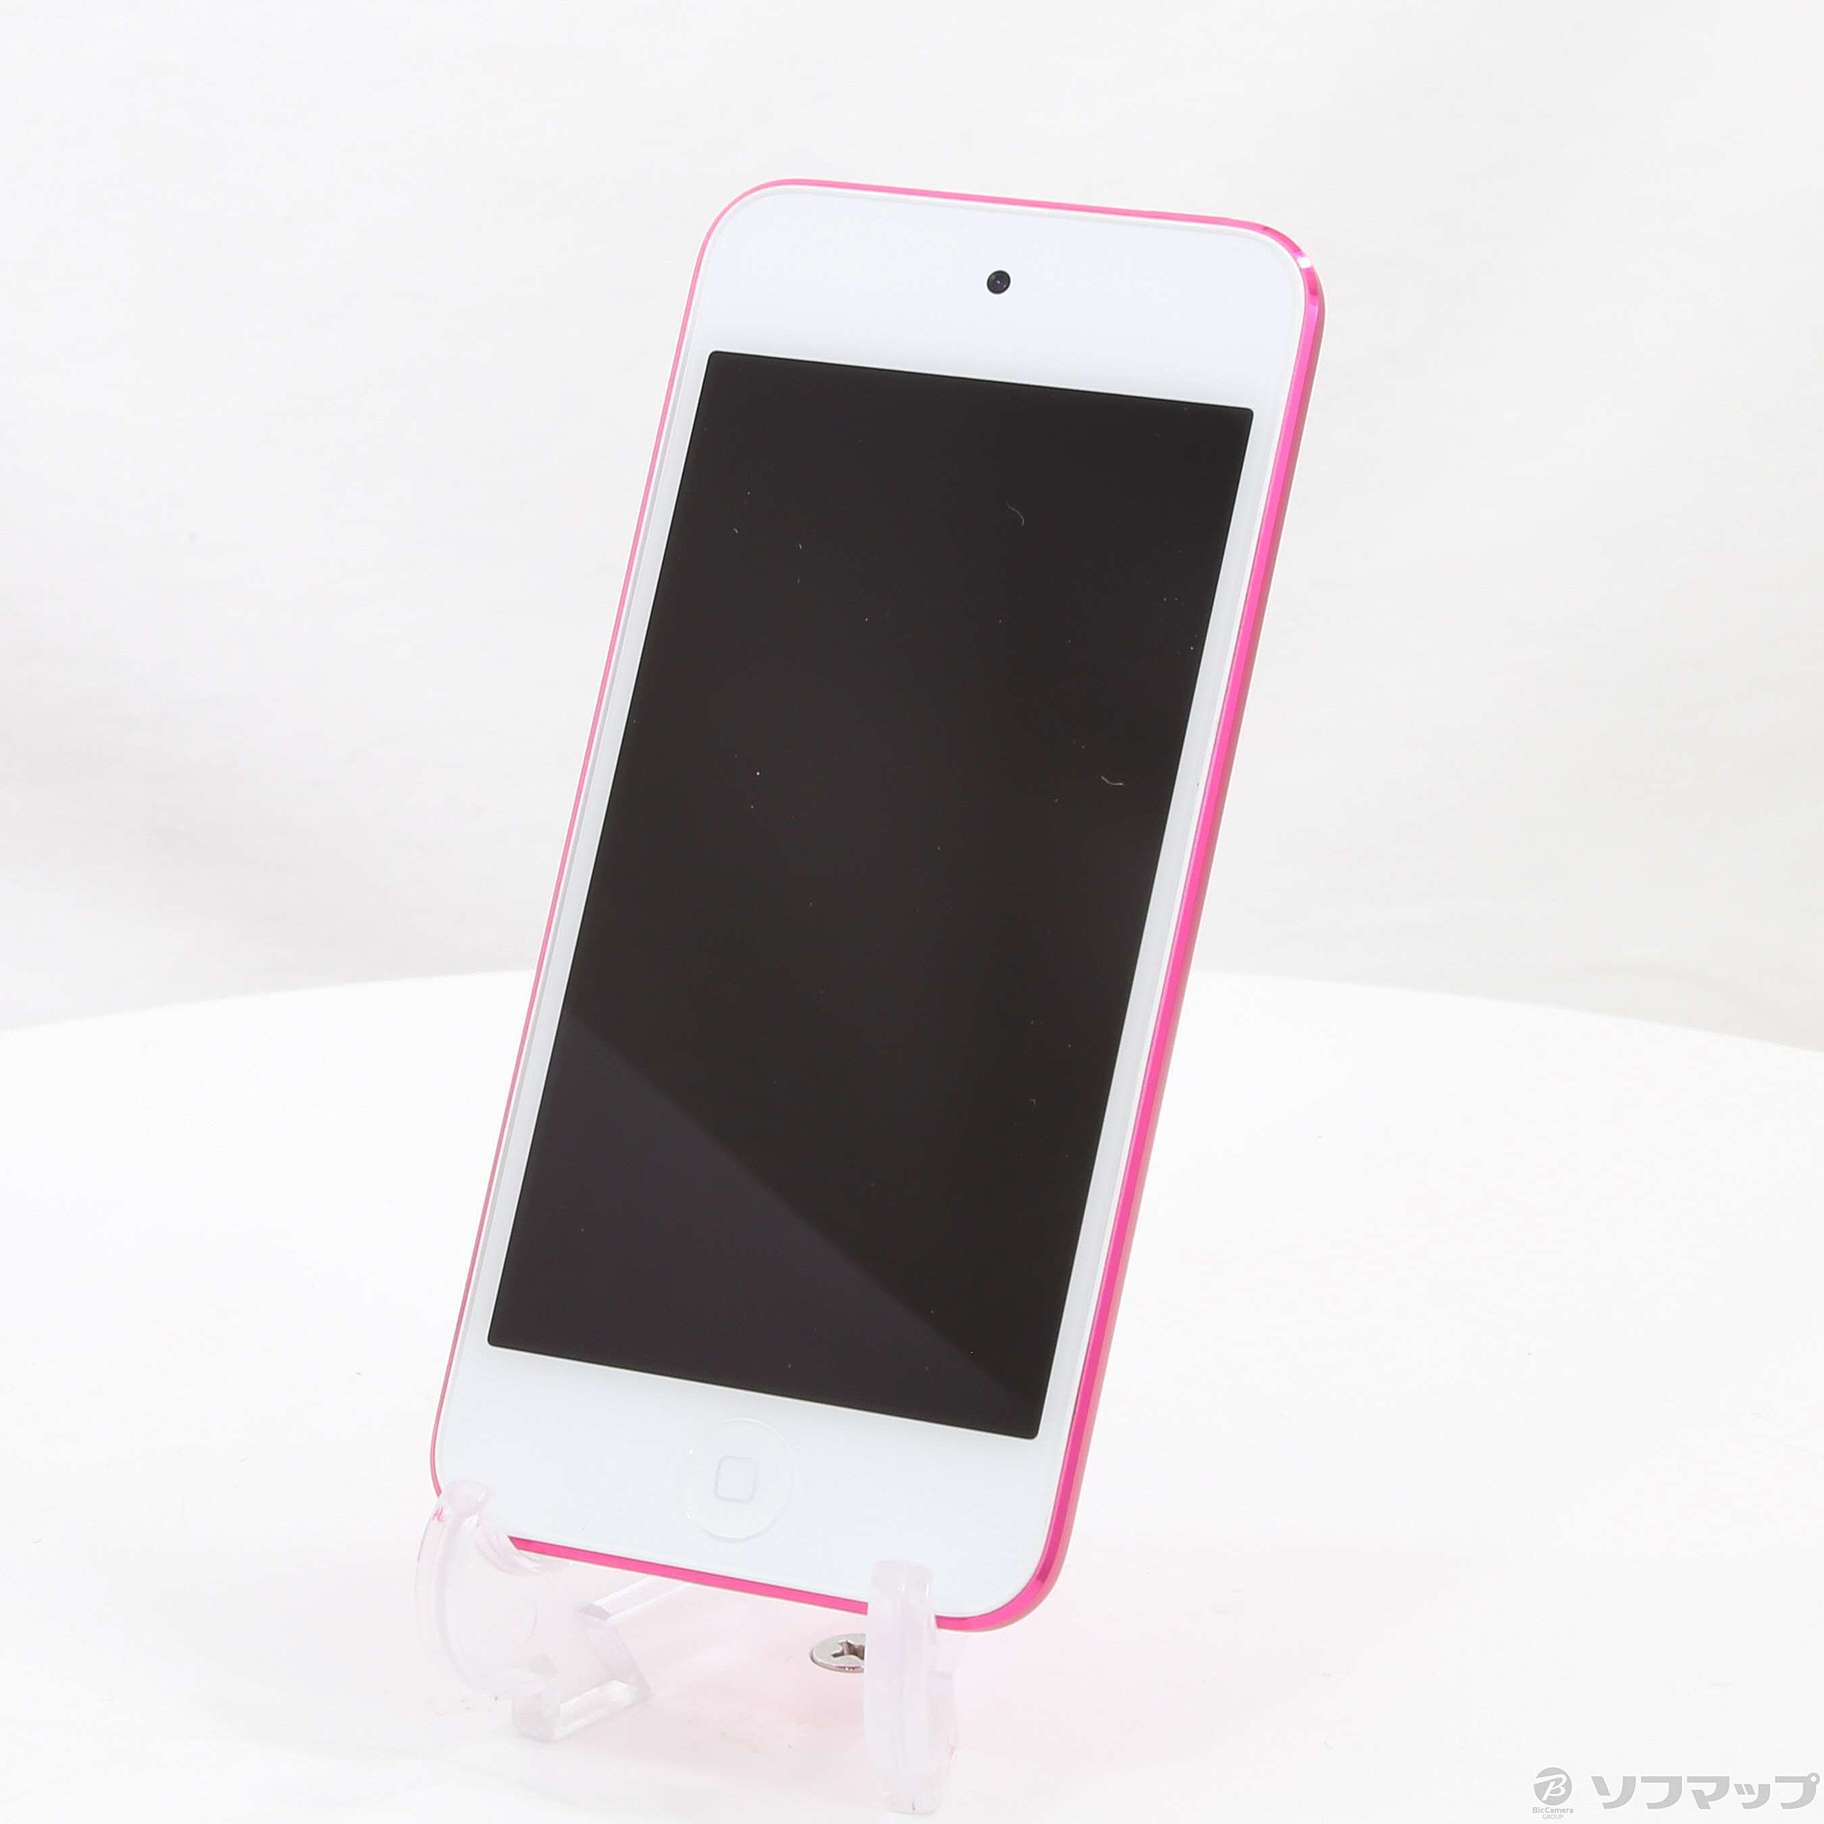 Apple アップル iPod touch アイポッドタッチ A2178 MVHR2J/A 第7世代 32GB ピンク 本体のみ